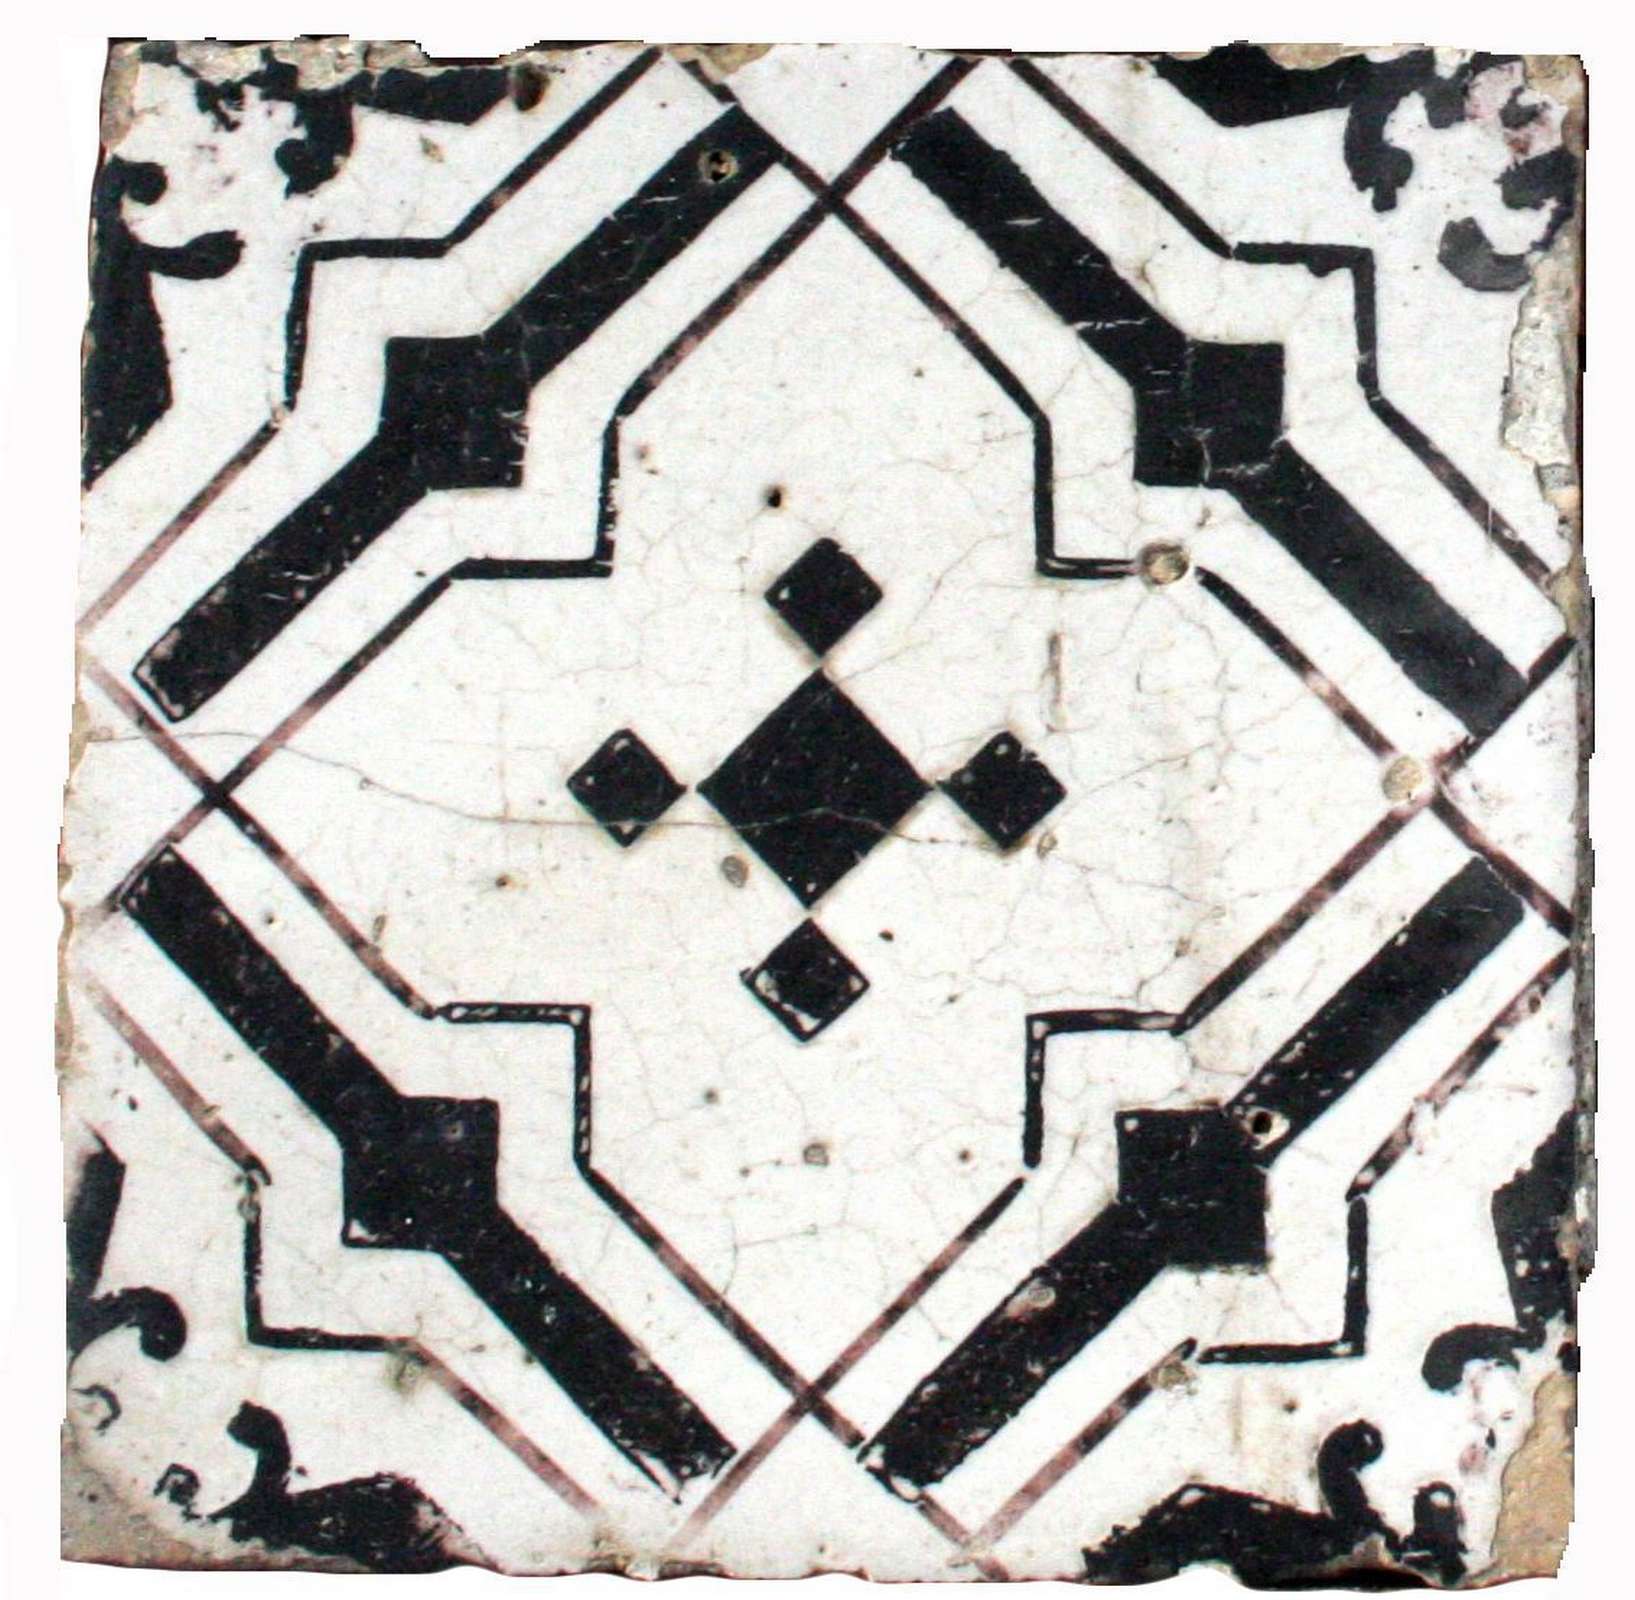 Antica mattonella in maiolica - Maioliche Antiche - Pavimentazioni Antiche - Prodotti - Antichità Fiorillo